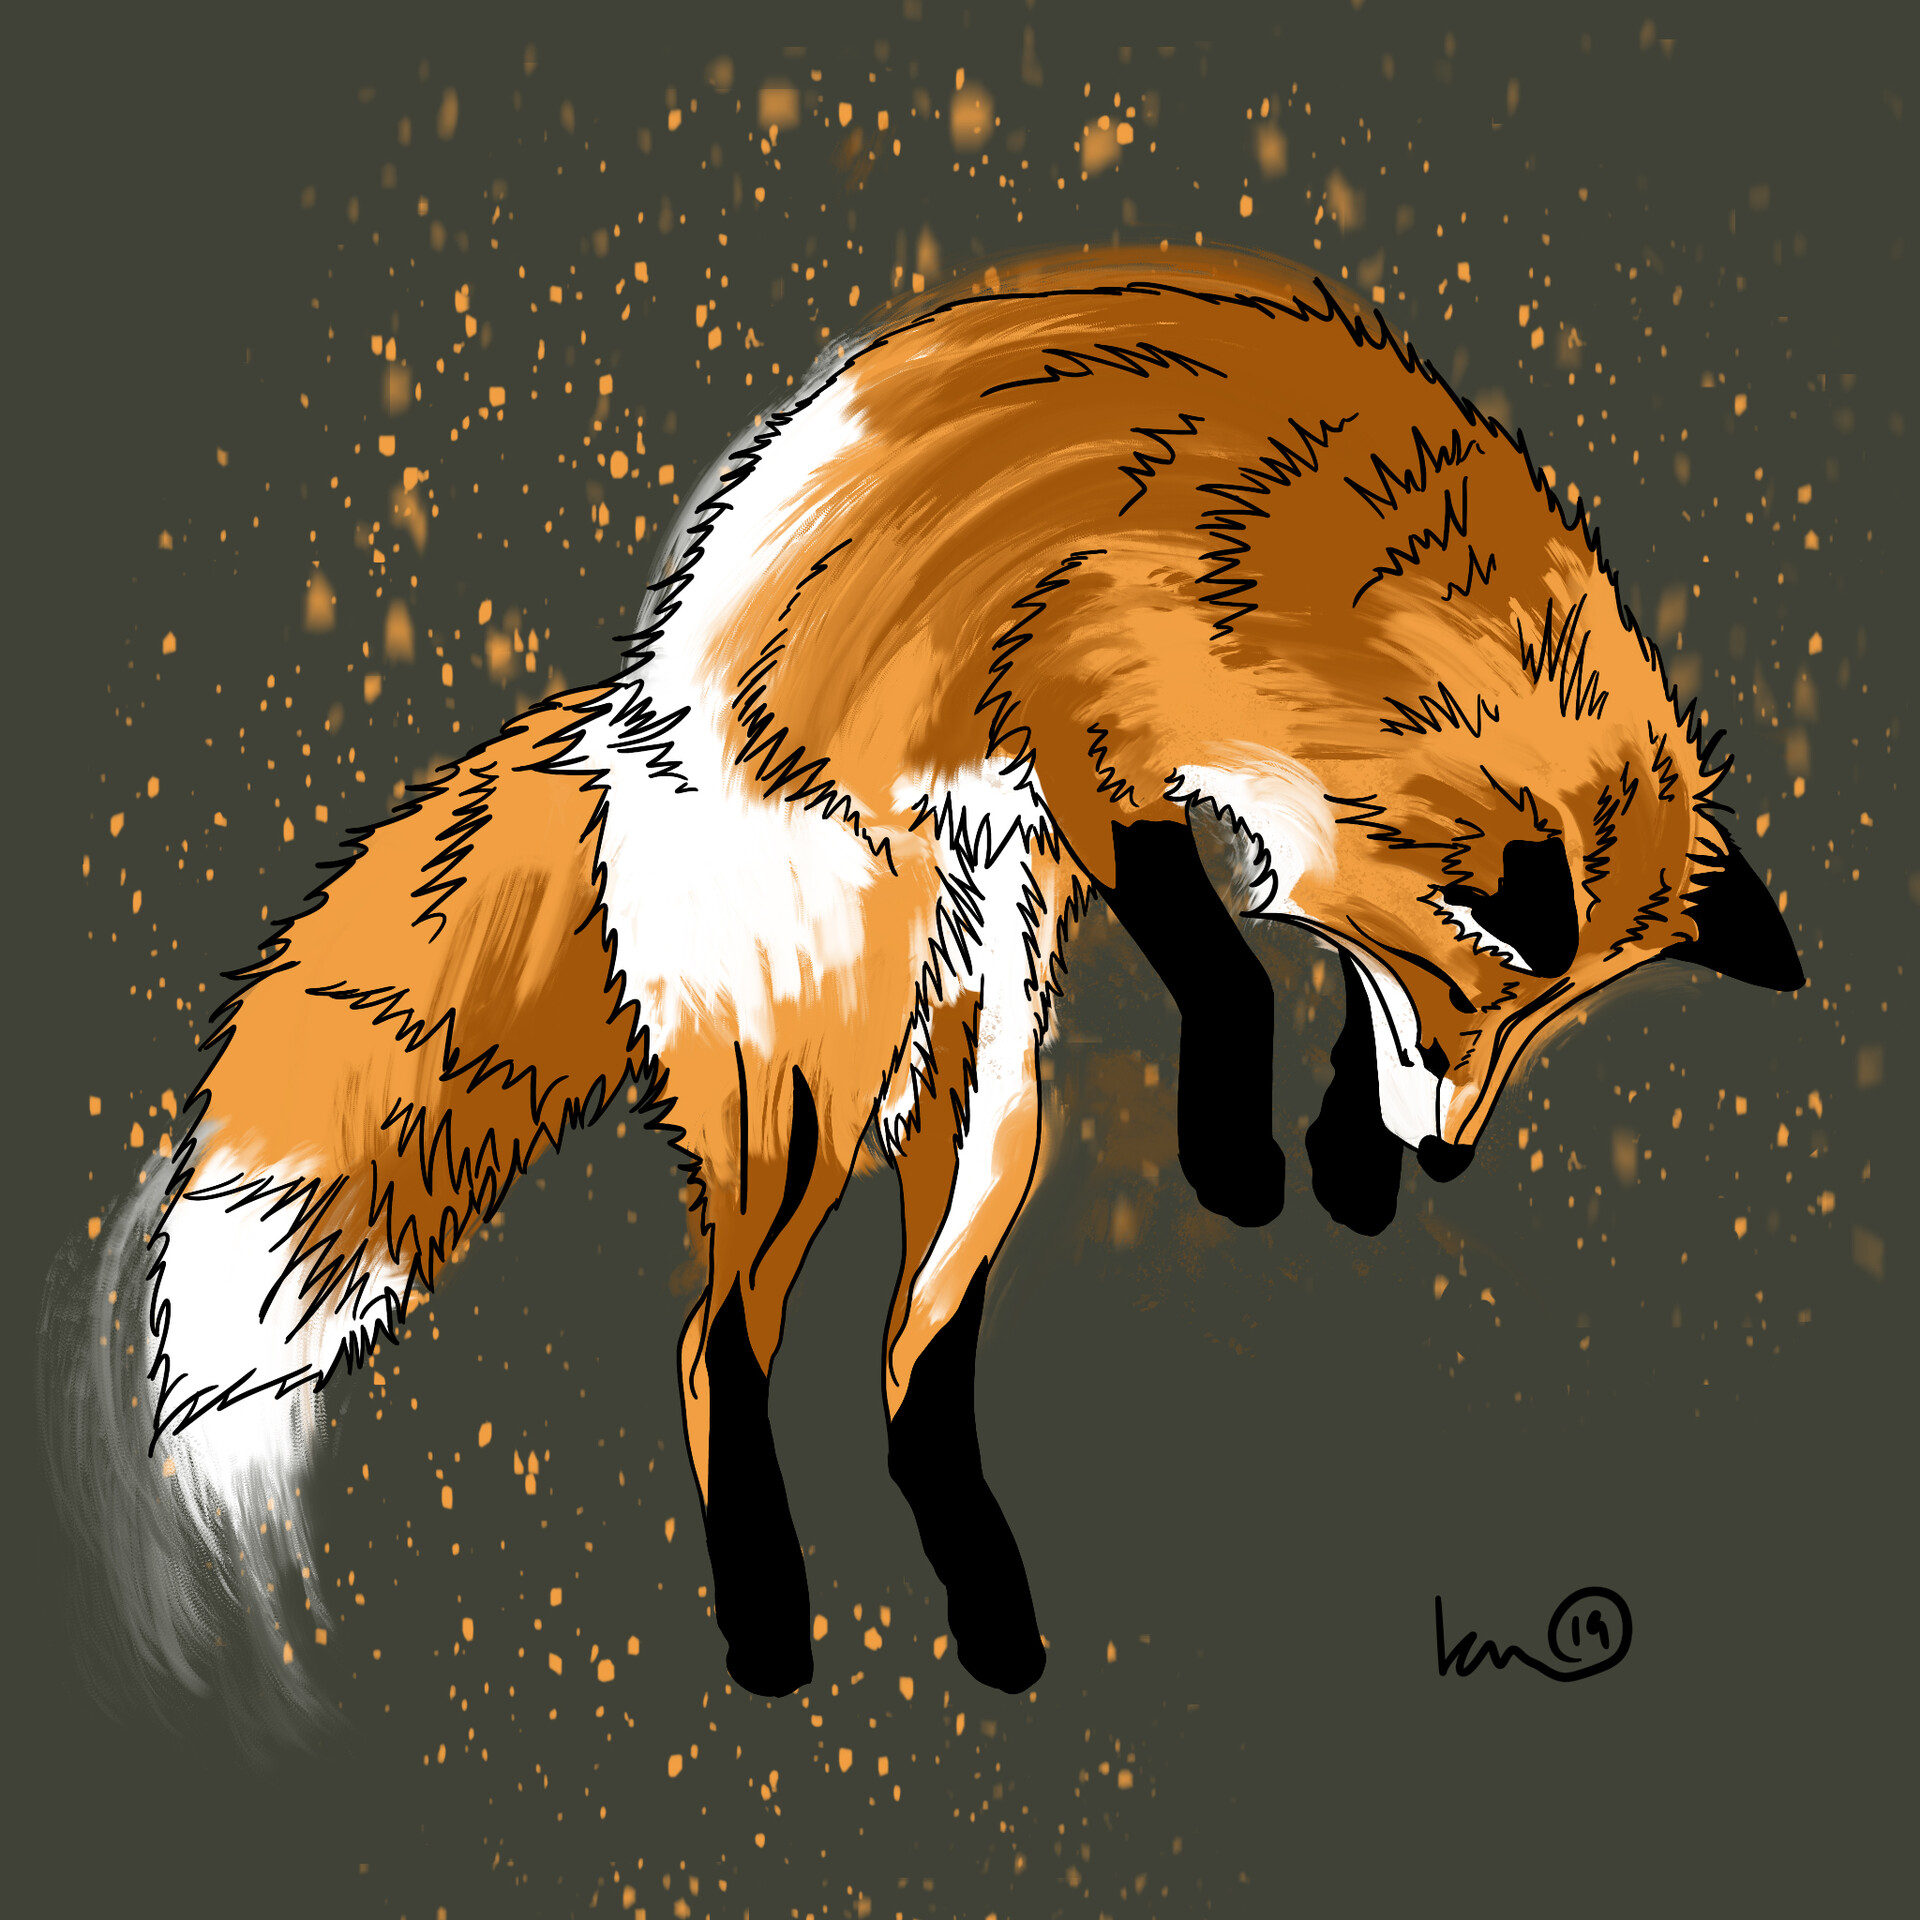 Fox Jump